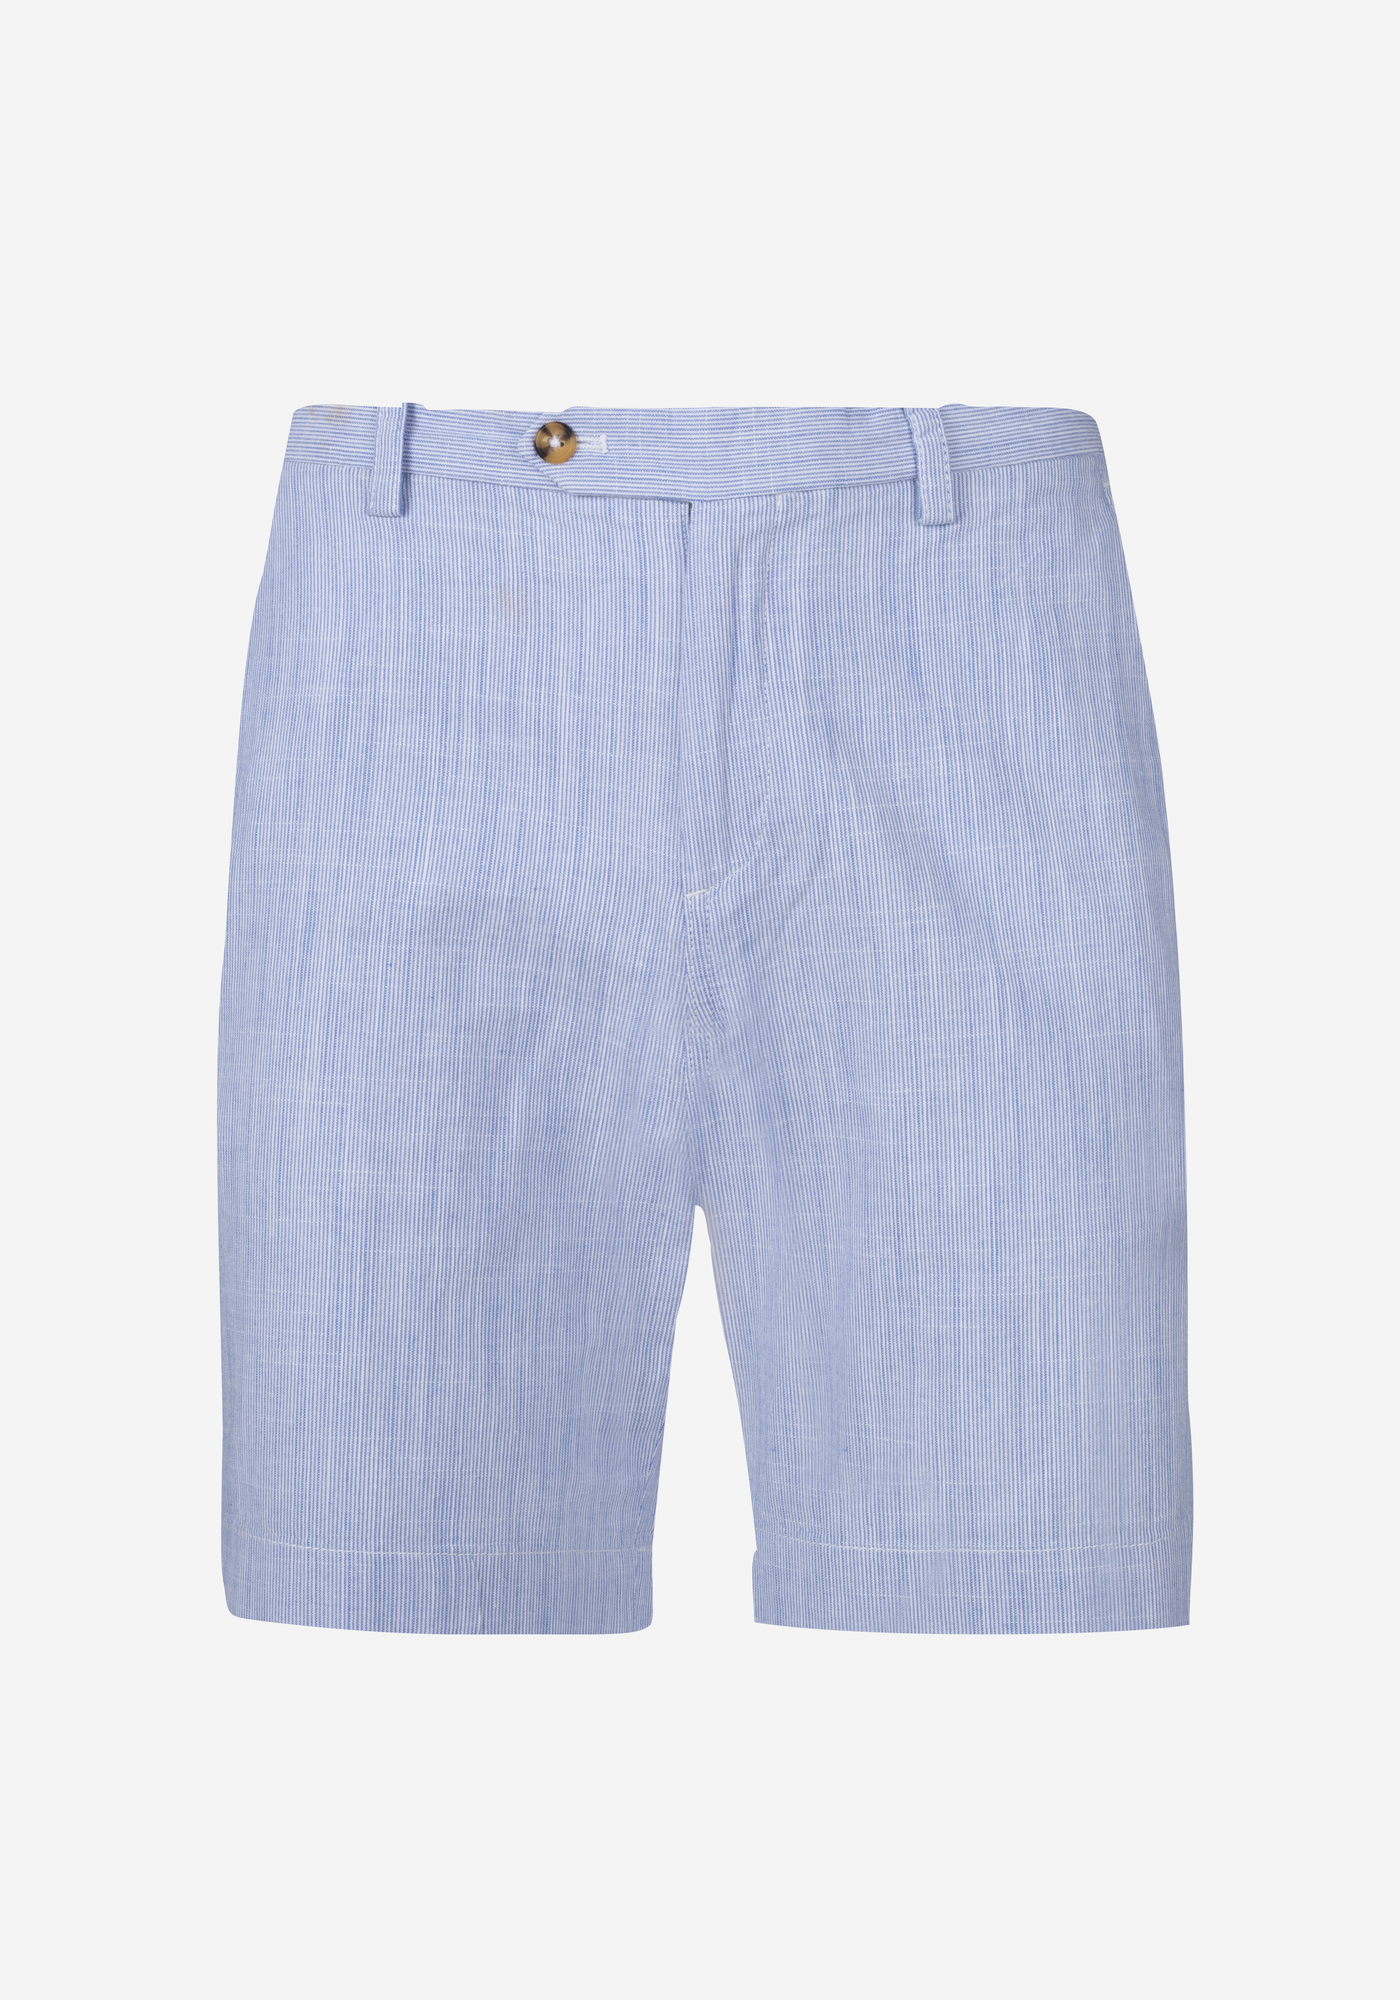 Delft Blue Cotton Linen Short